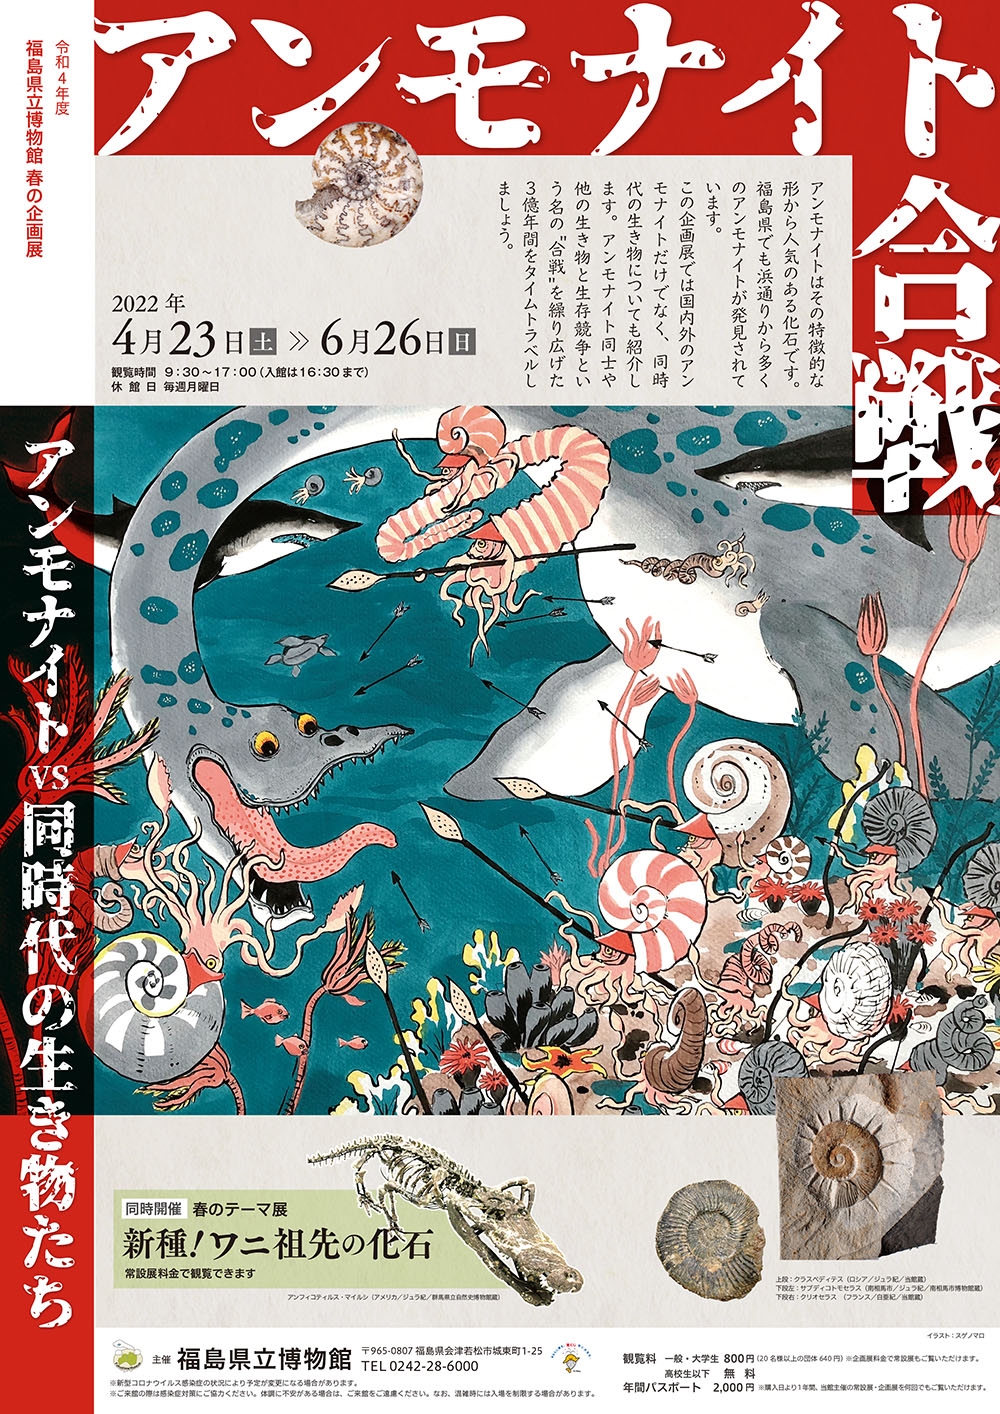 福島県立博物館 2022年春の企画展 広告デザイン